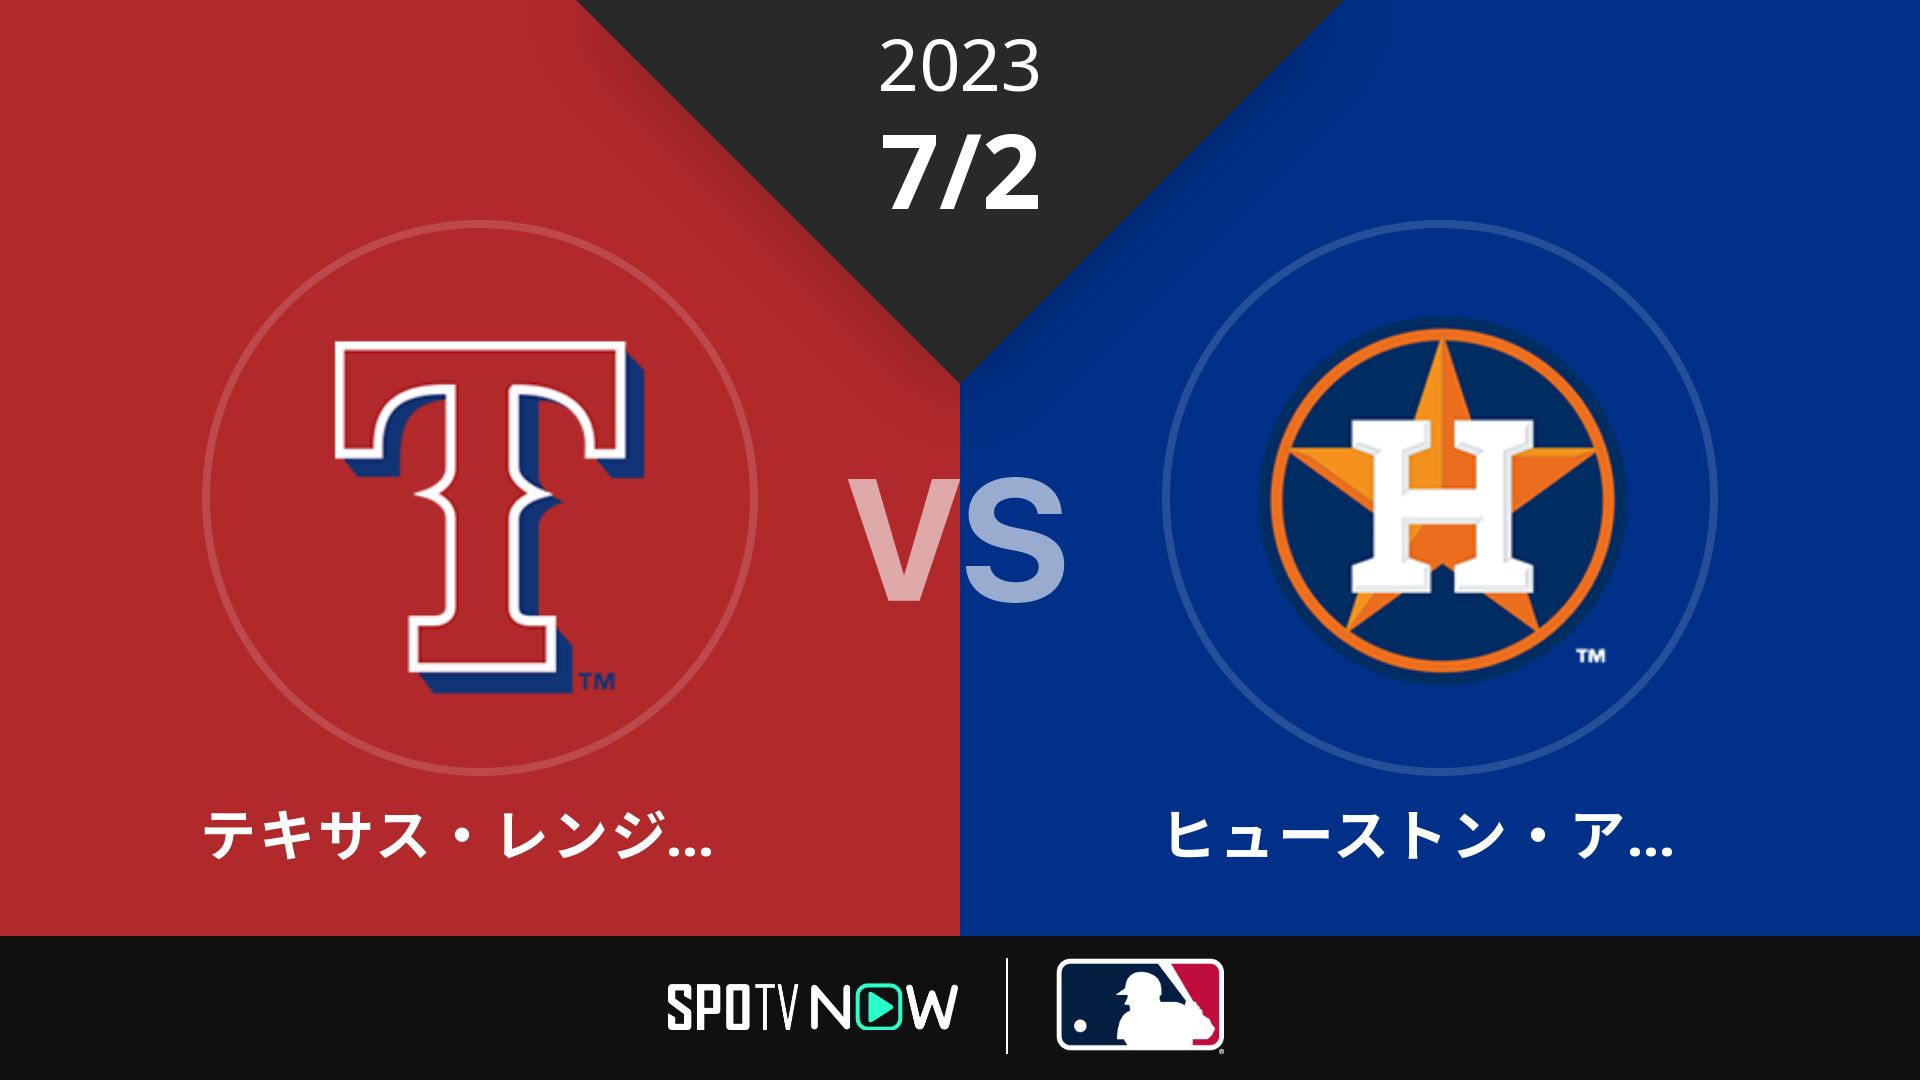 2023/7/2 レンジャーズ vs アストロズ [MLB]